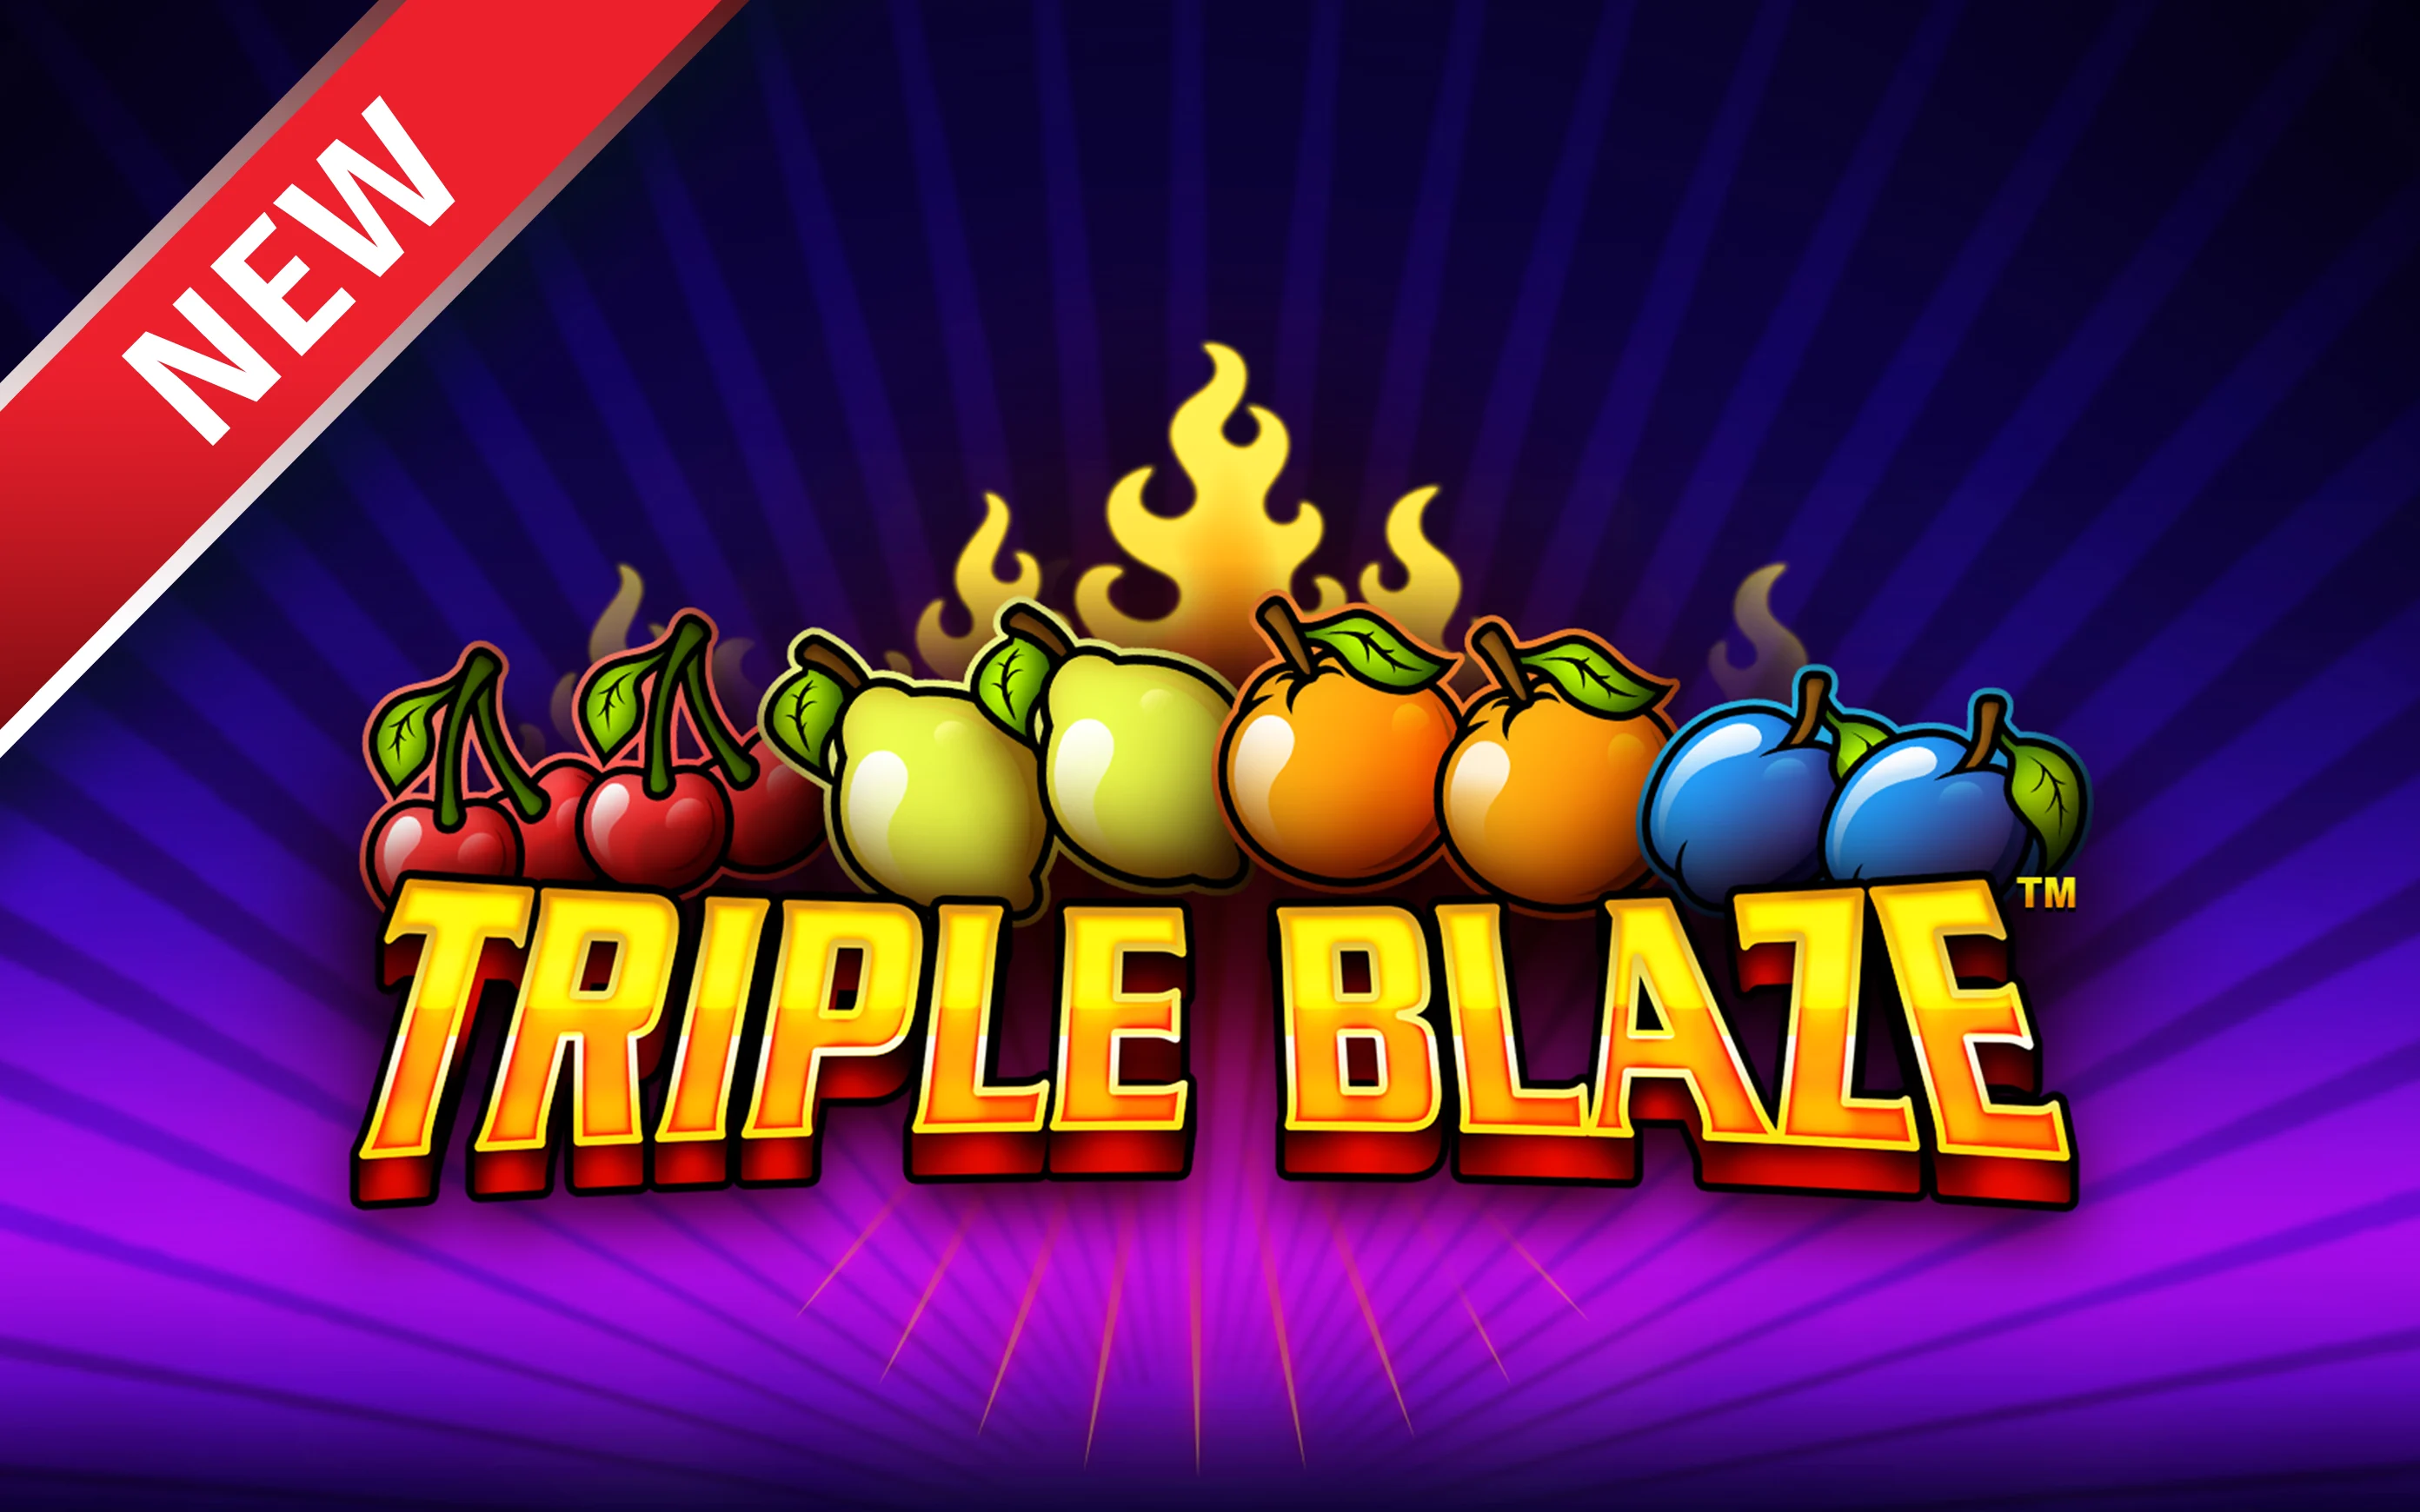 Speel Triple Blaze op Starcasino.be online casino